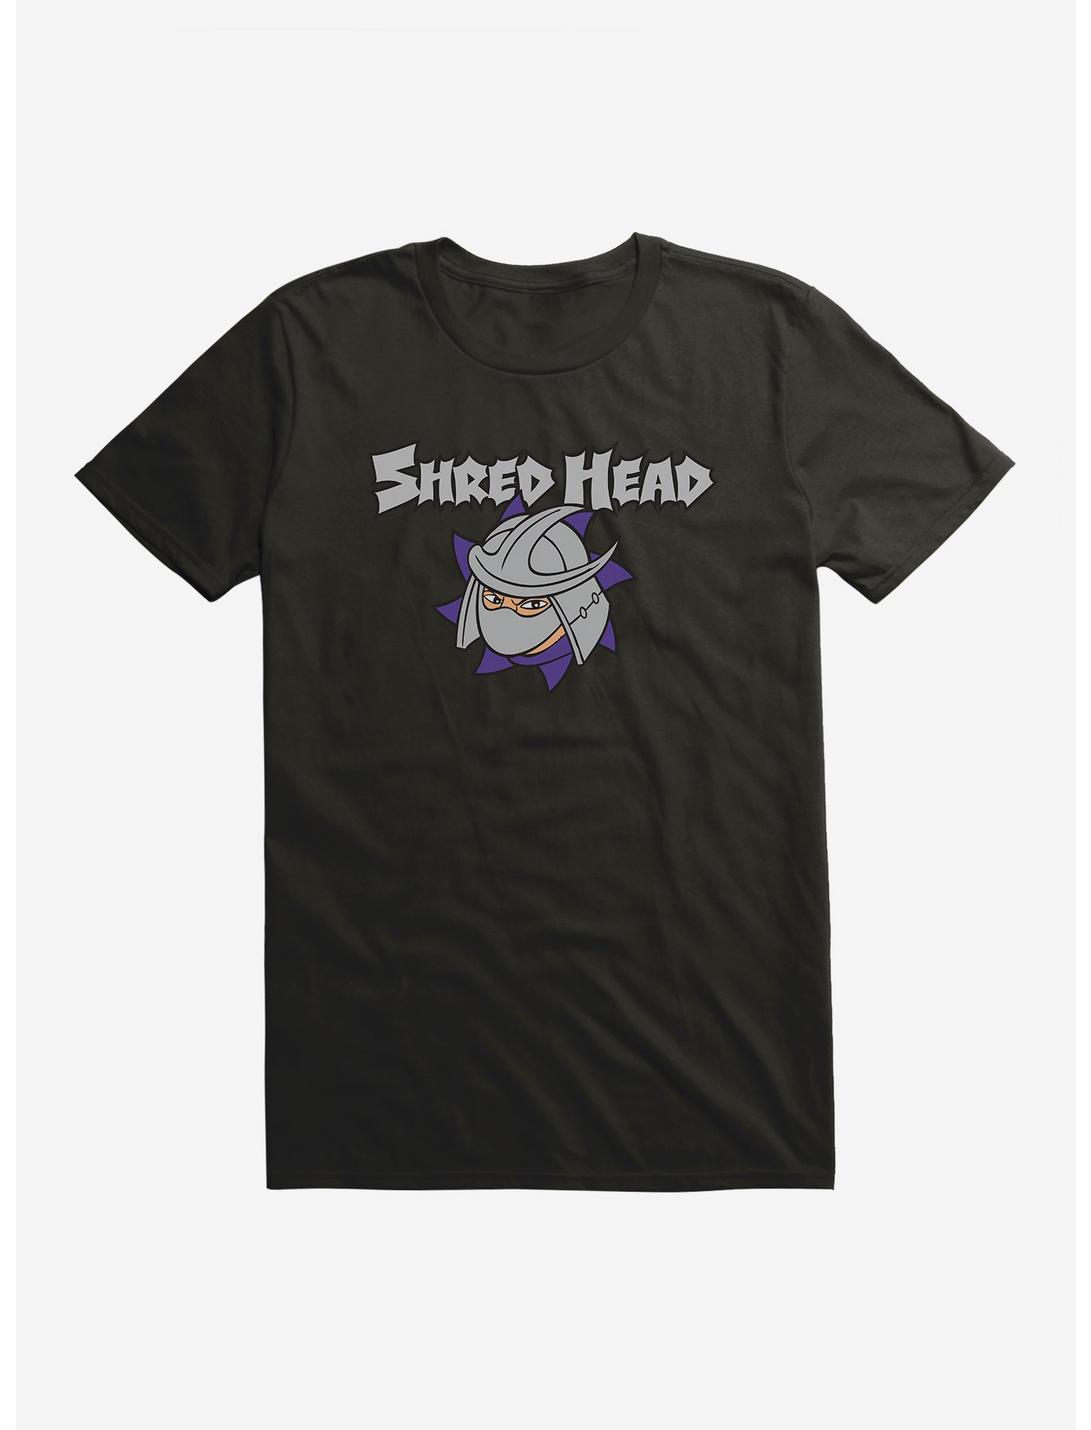 Teenage Mutant Ninja Turtles Shred Head T-Shirt, BLACK, hi-res